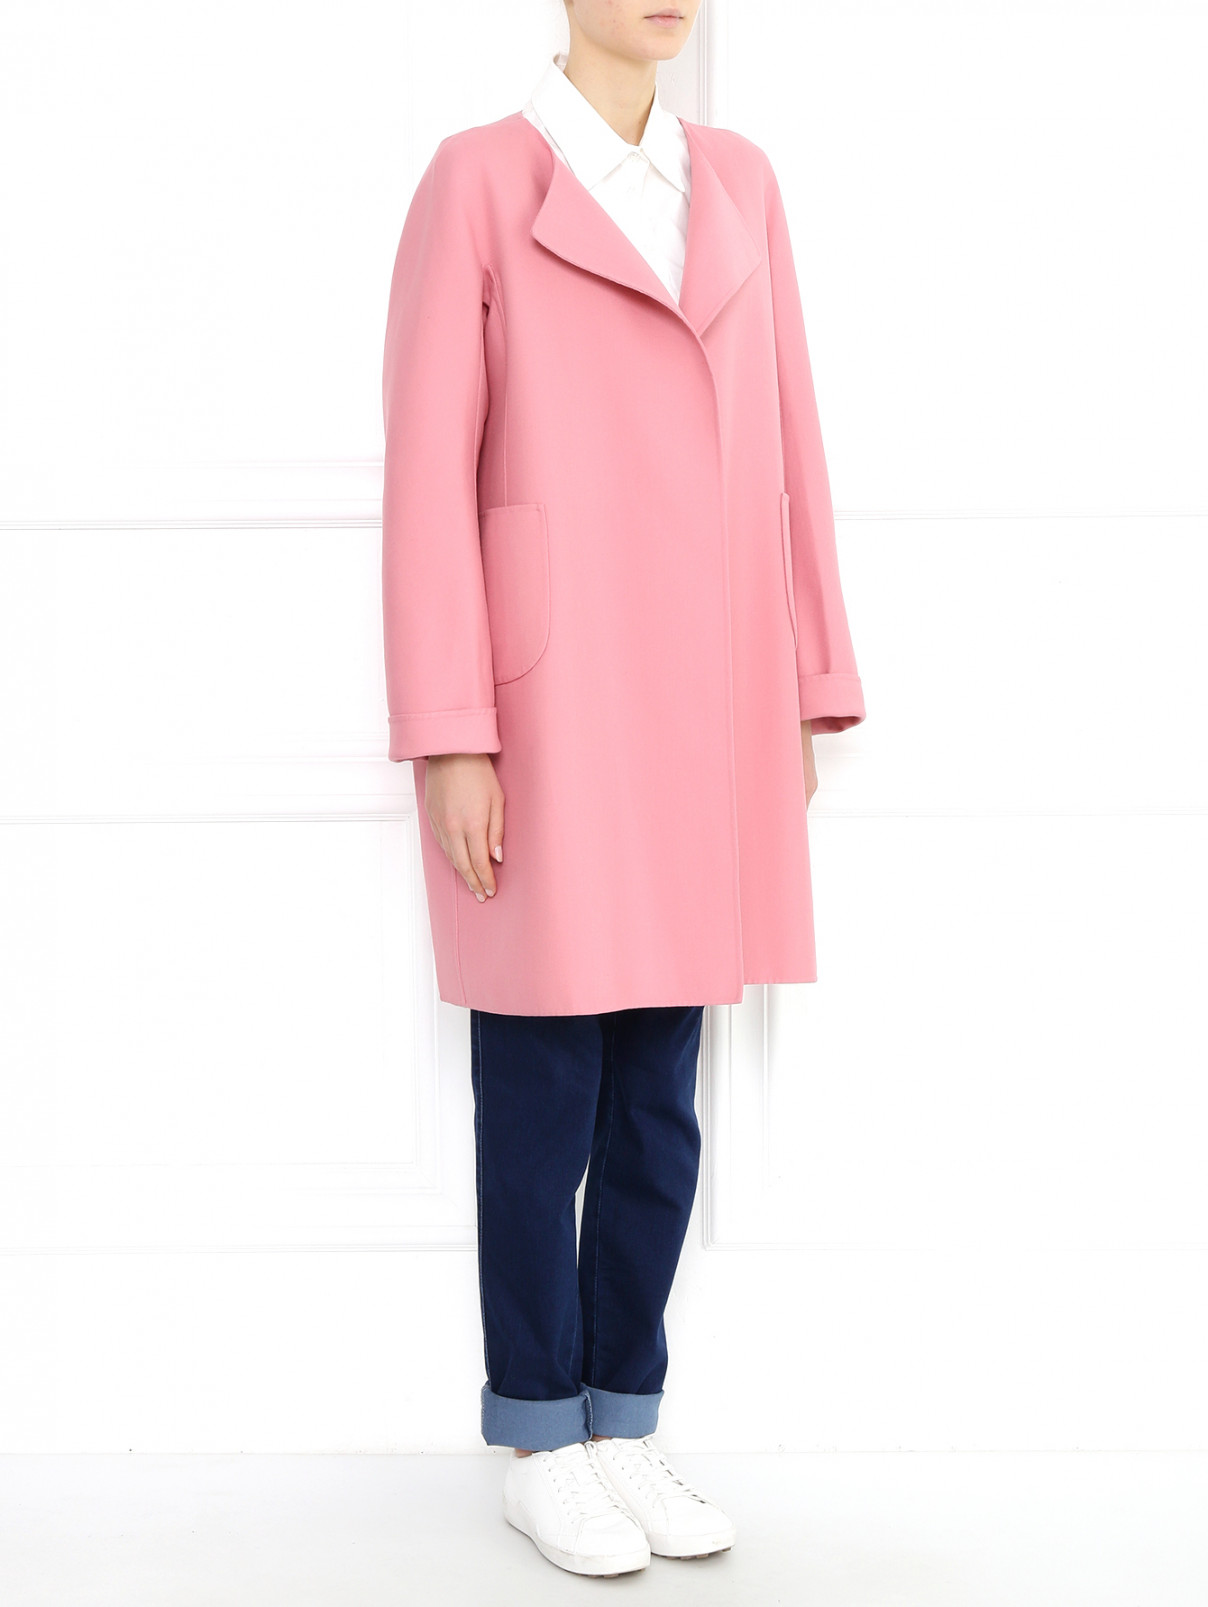 Пальто из хлопка с накладными карманами Jil Sander  –  Модель Общий вид  – Цвет:  Розовый